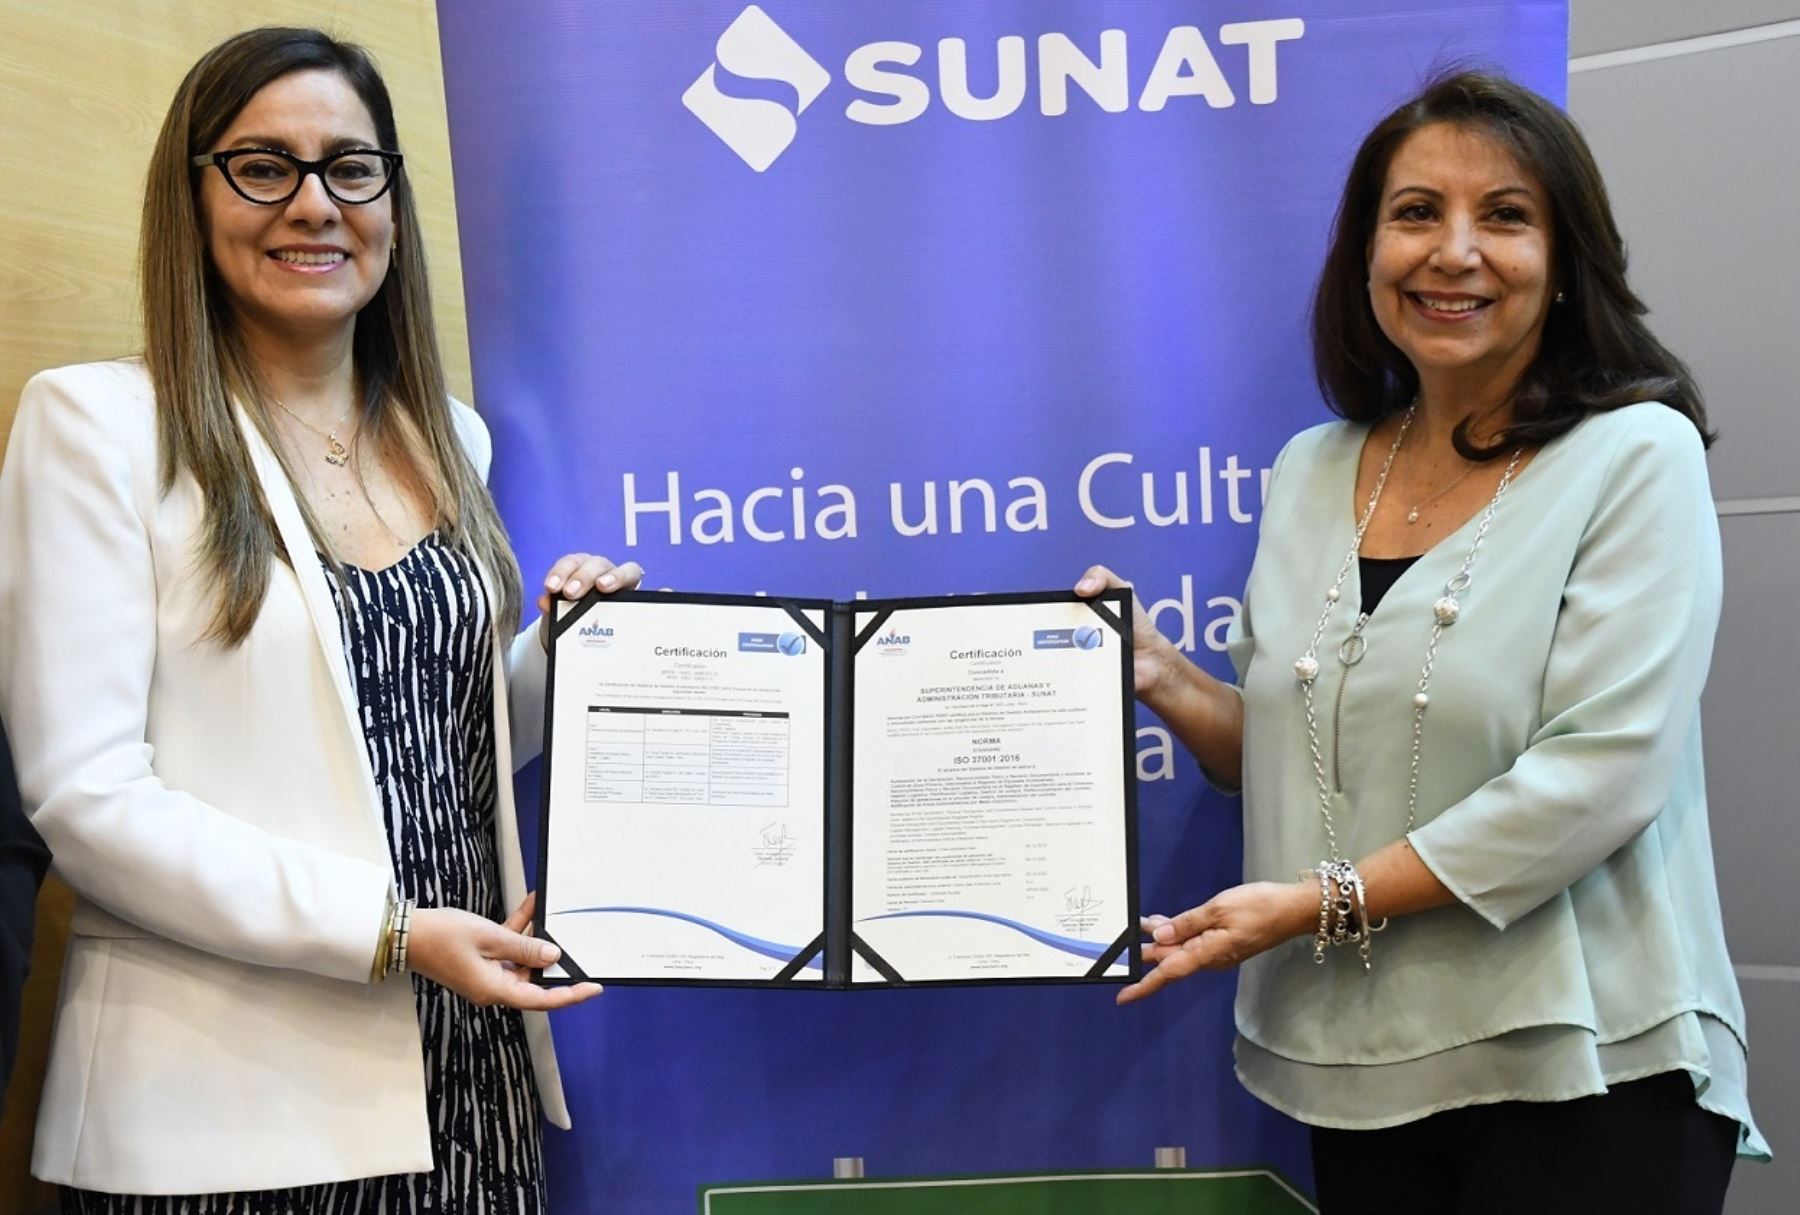 La jefa de la Sunat, Claudia Suárez, recibe el reconocimiento.